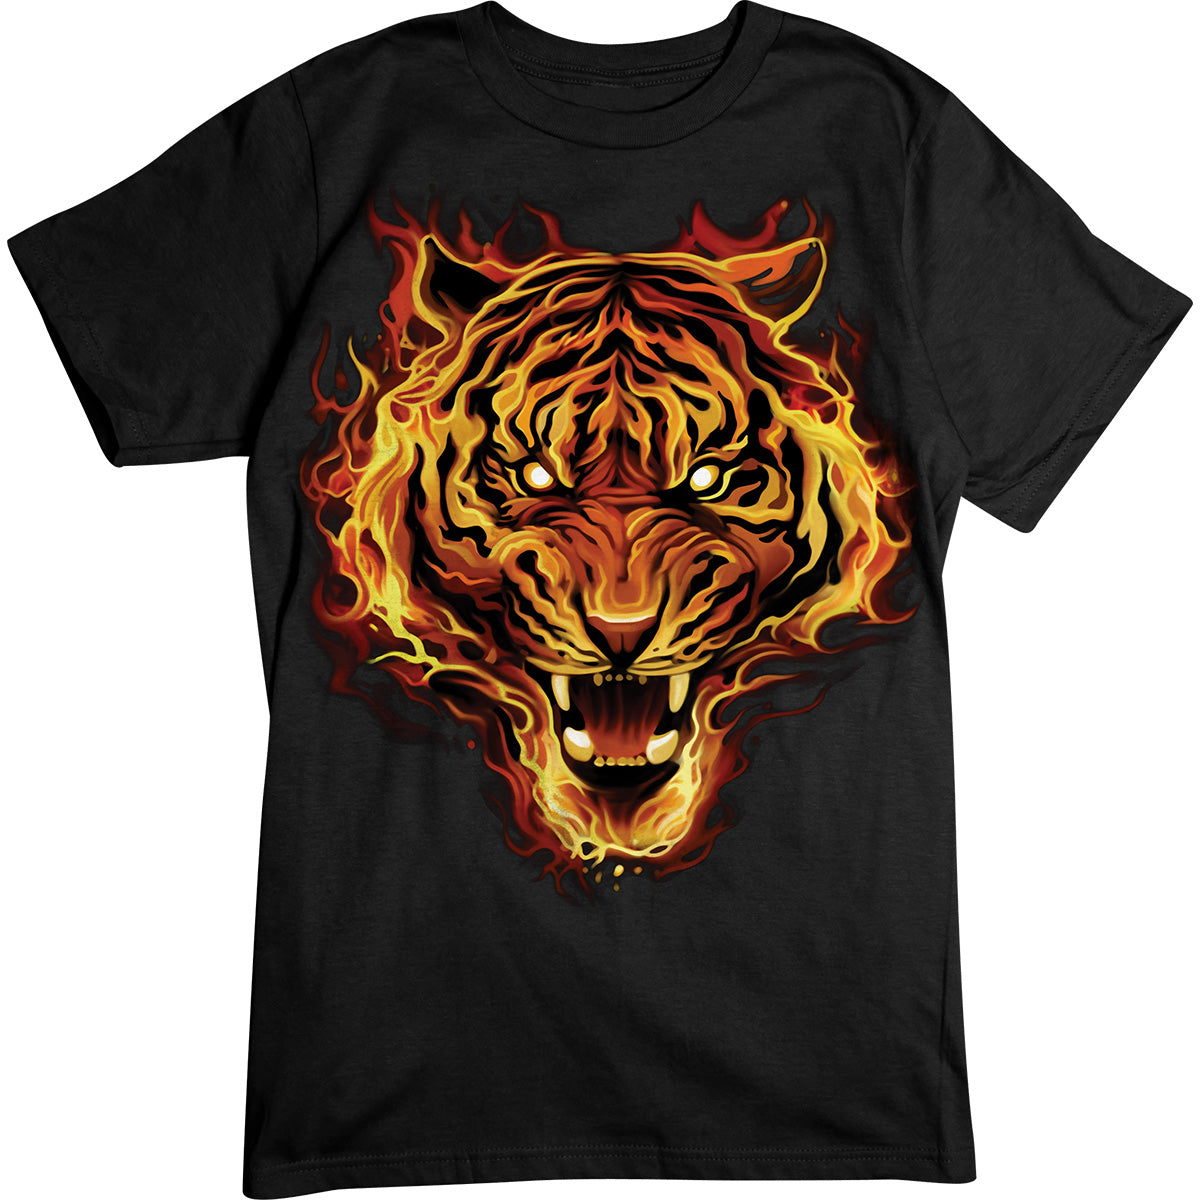 Flaming Tiger, T-Shirt